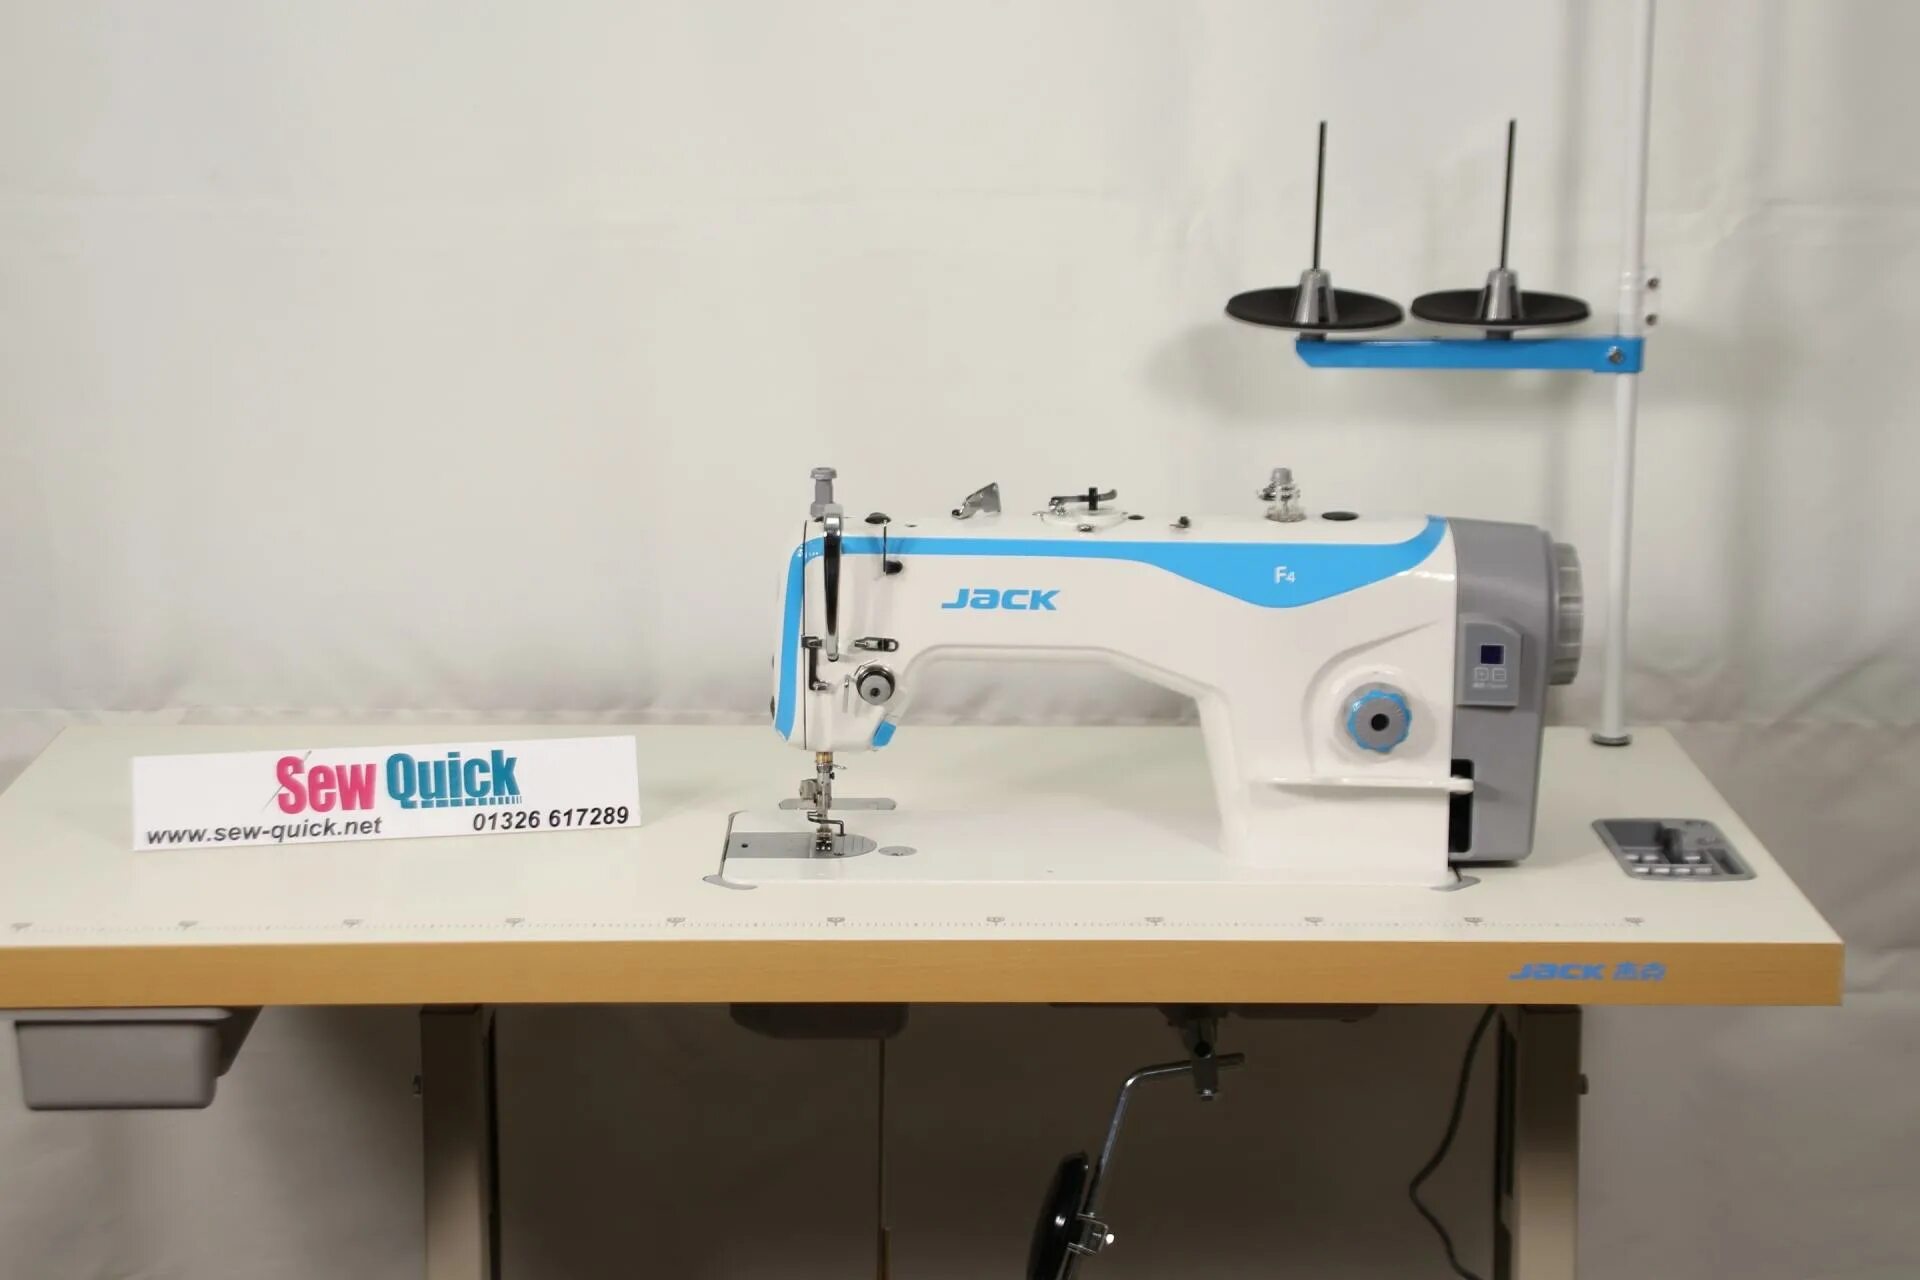 Швейная машинка джак. Jack f4 швейная машина. Швейная машинка Джек f4. Промышленная швейная машина Джек f4. Швейная машина Jack JK-f4 комплект.